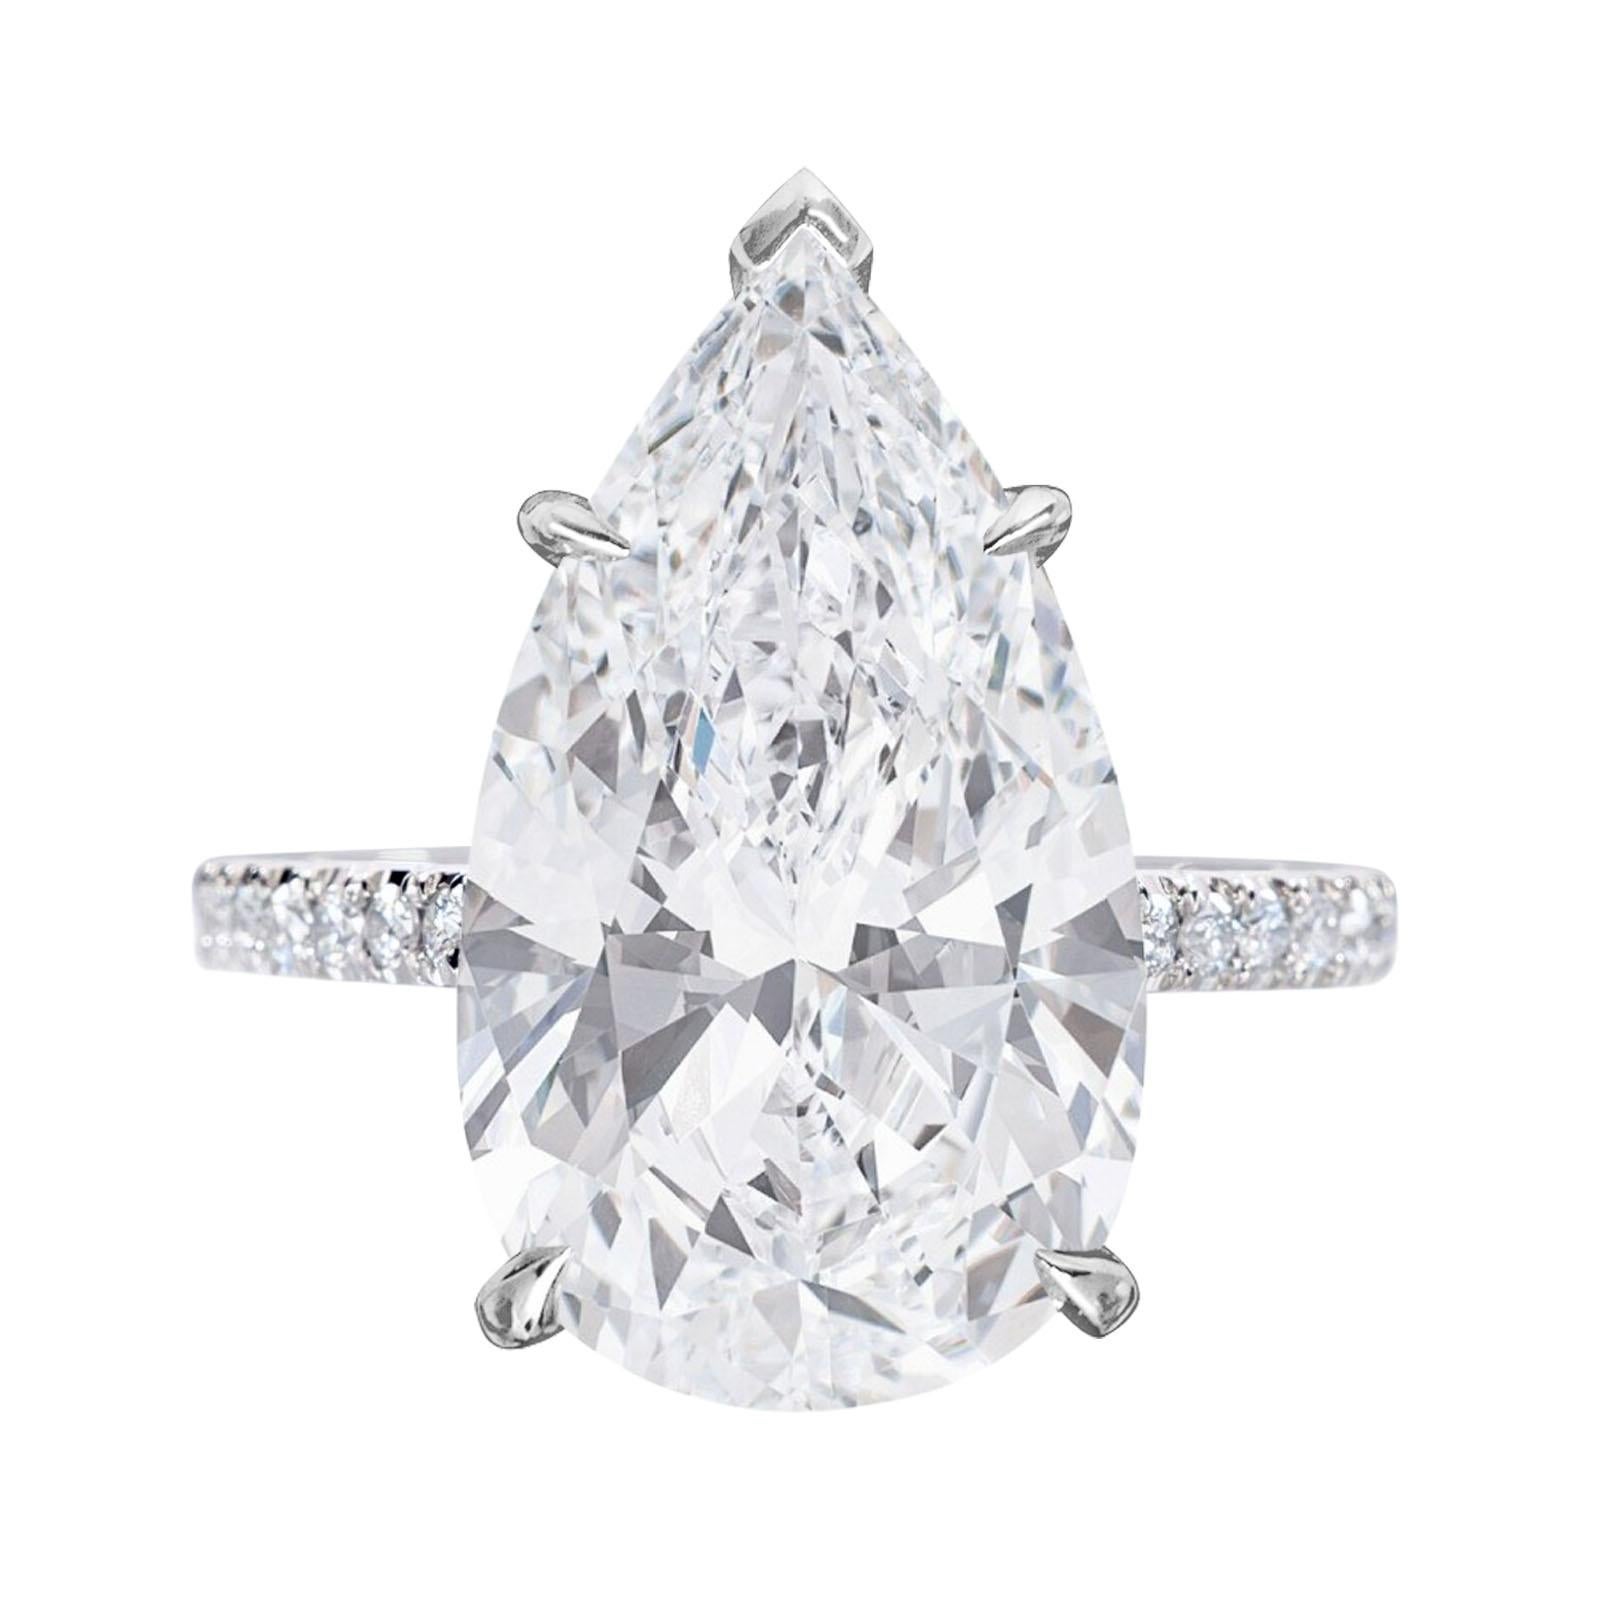 Embrassez l'incarnation du luxe avec cette bague à diamant poire de 8 carats certifiée GIA, ornée de diamants pavés. Au cœur de cette bague exquise brille un diamant poire envoûtant, certifié par le très estimé Gemological Institute of America (GIA)